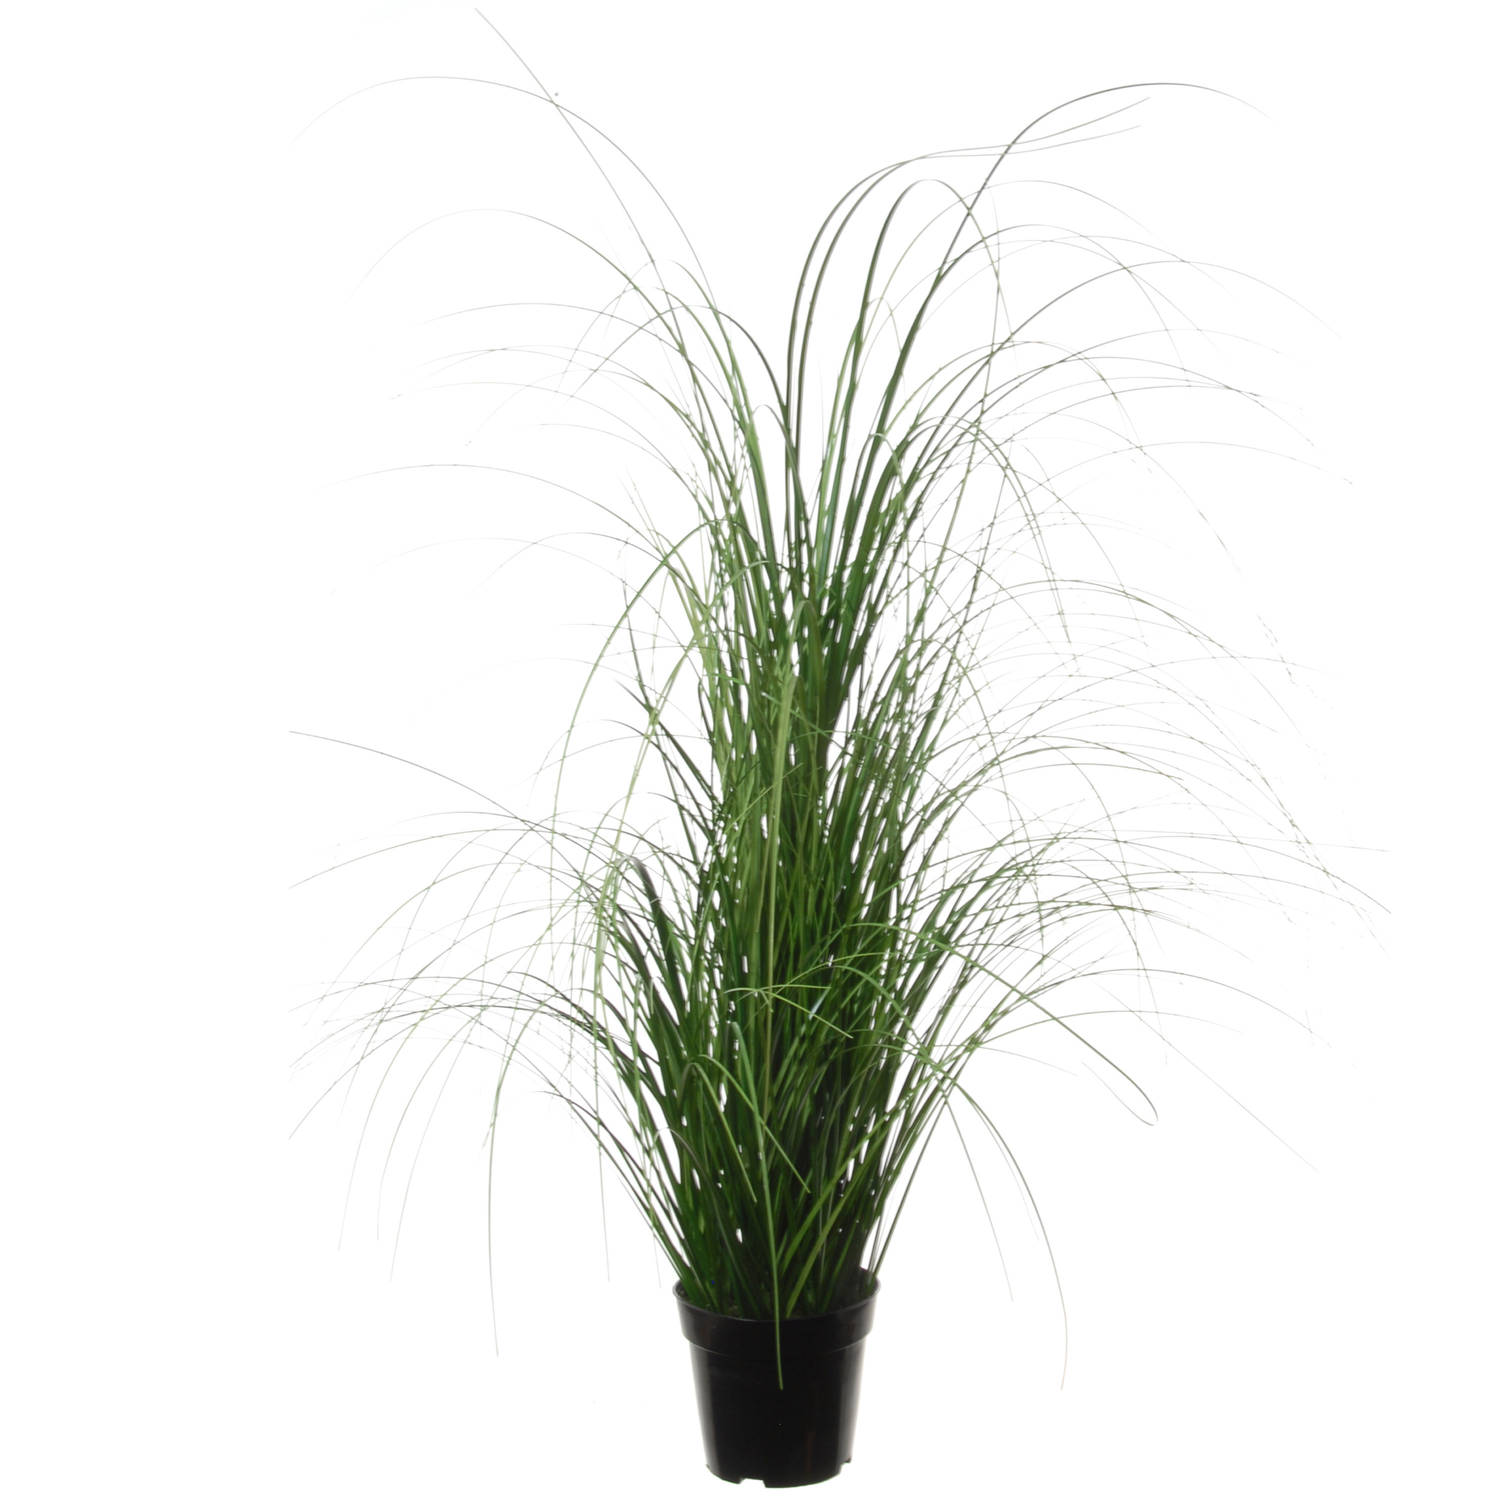 Louis Maes Quality kunstplant - Siergras bush sprieten - donkergroen - H110 cm - in pot